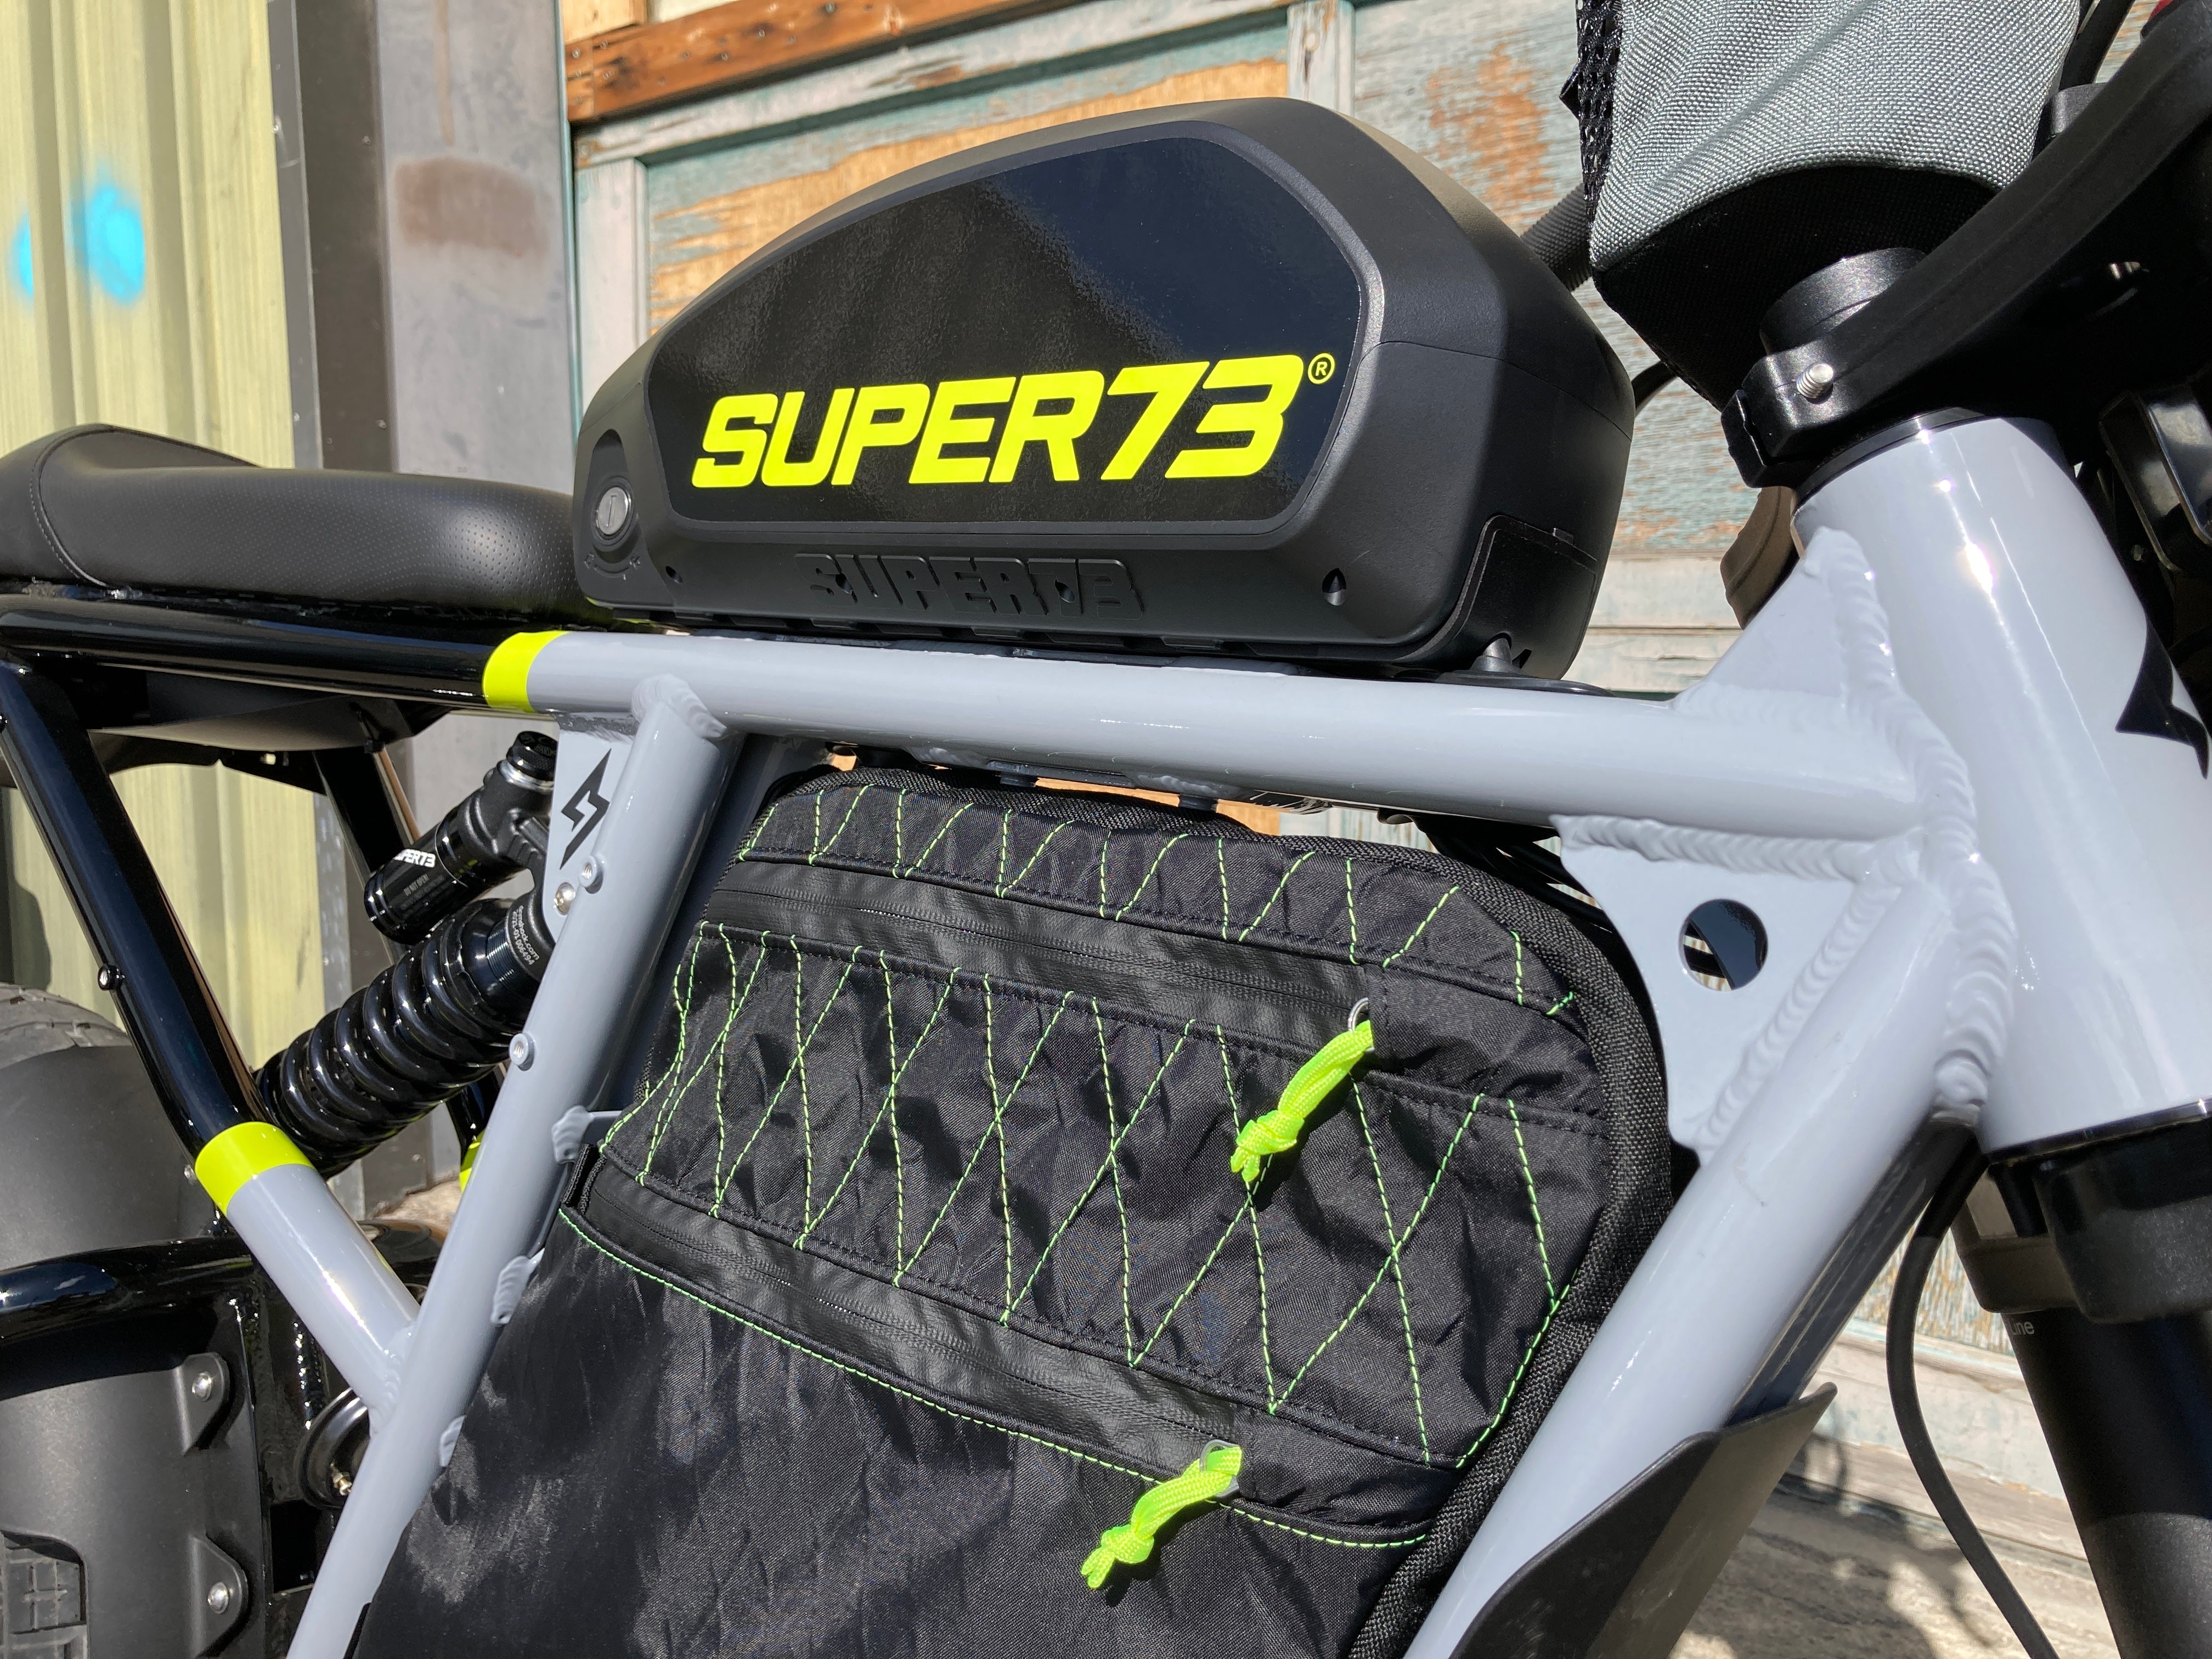 SUPER73-RX & R full frame pack